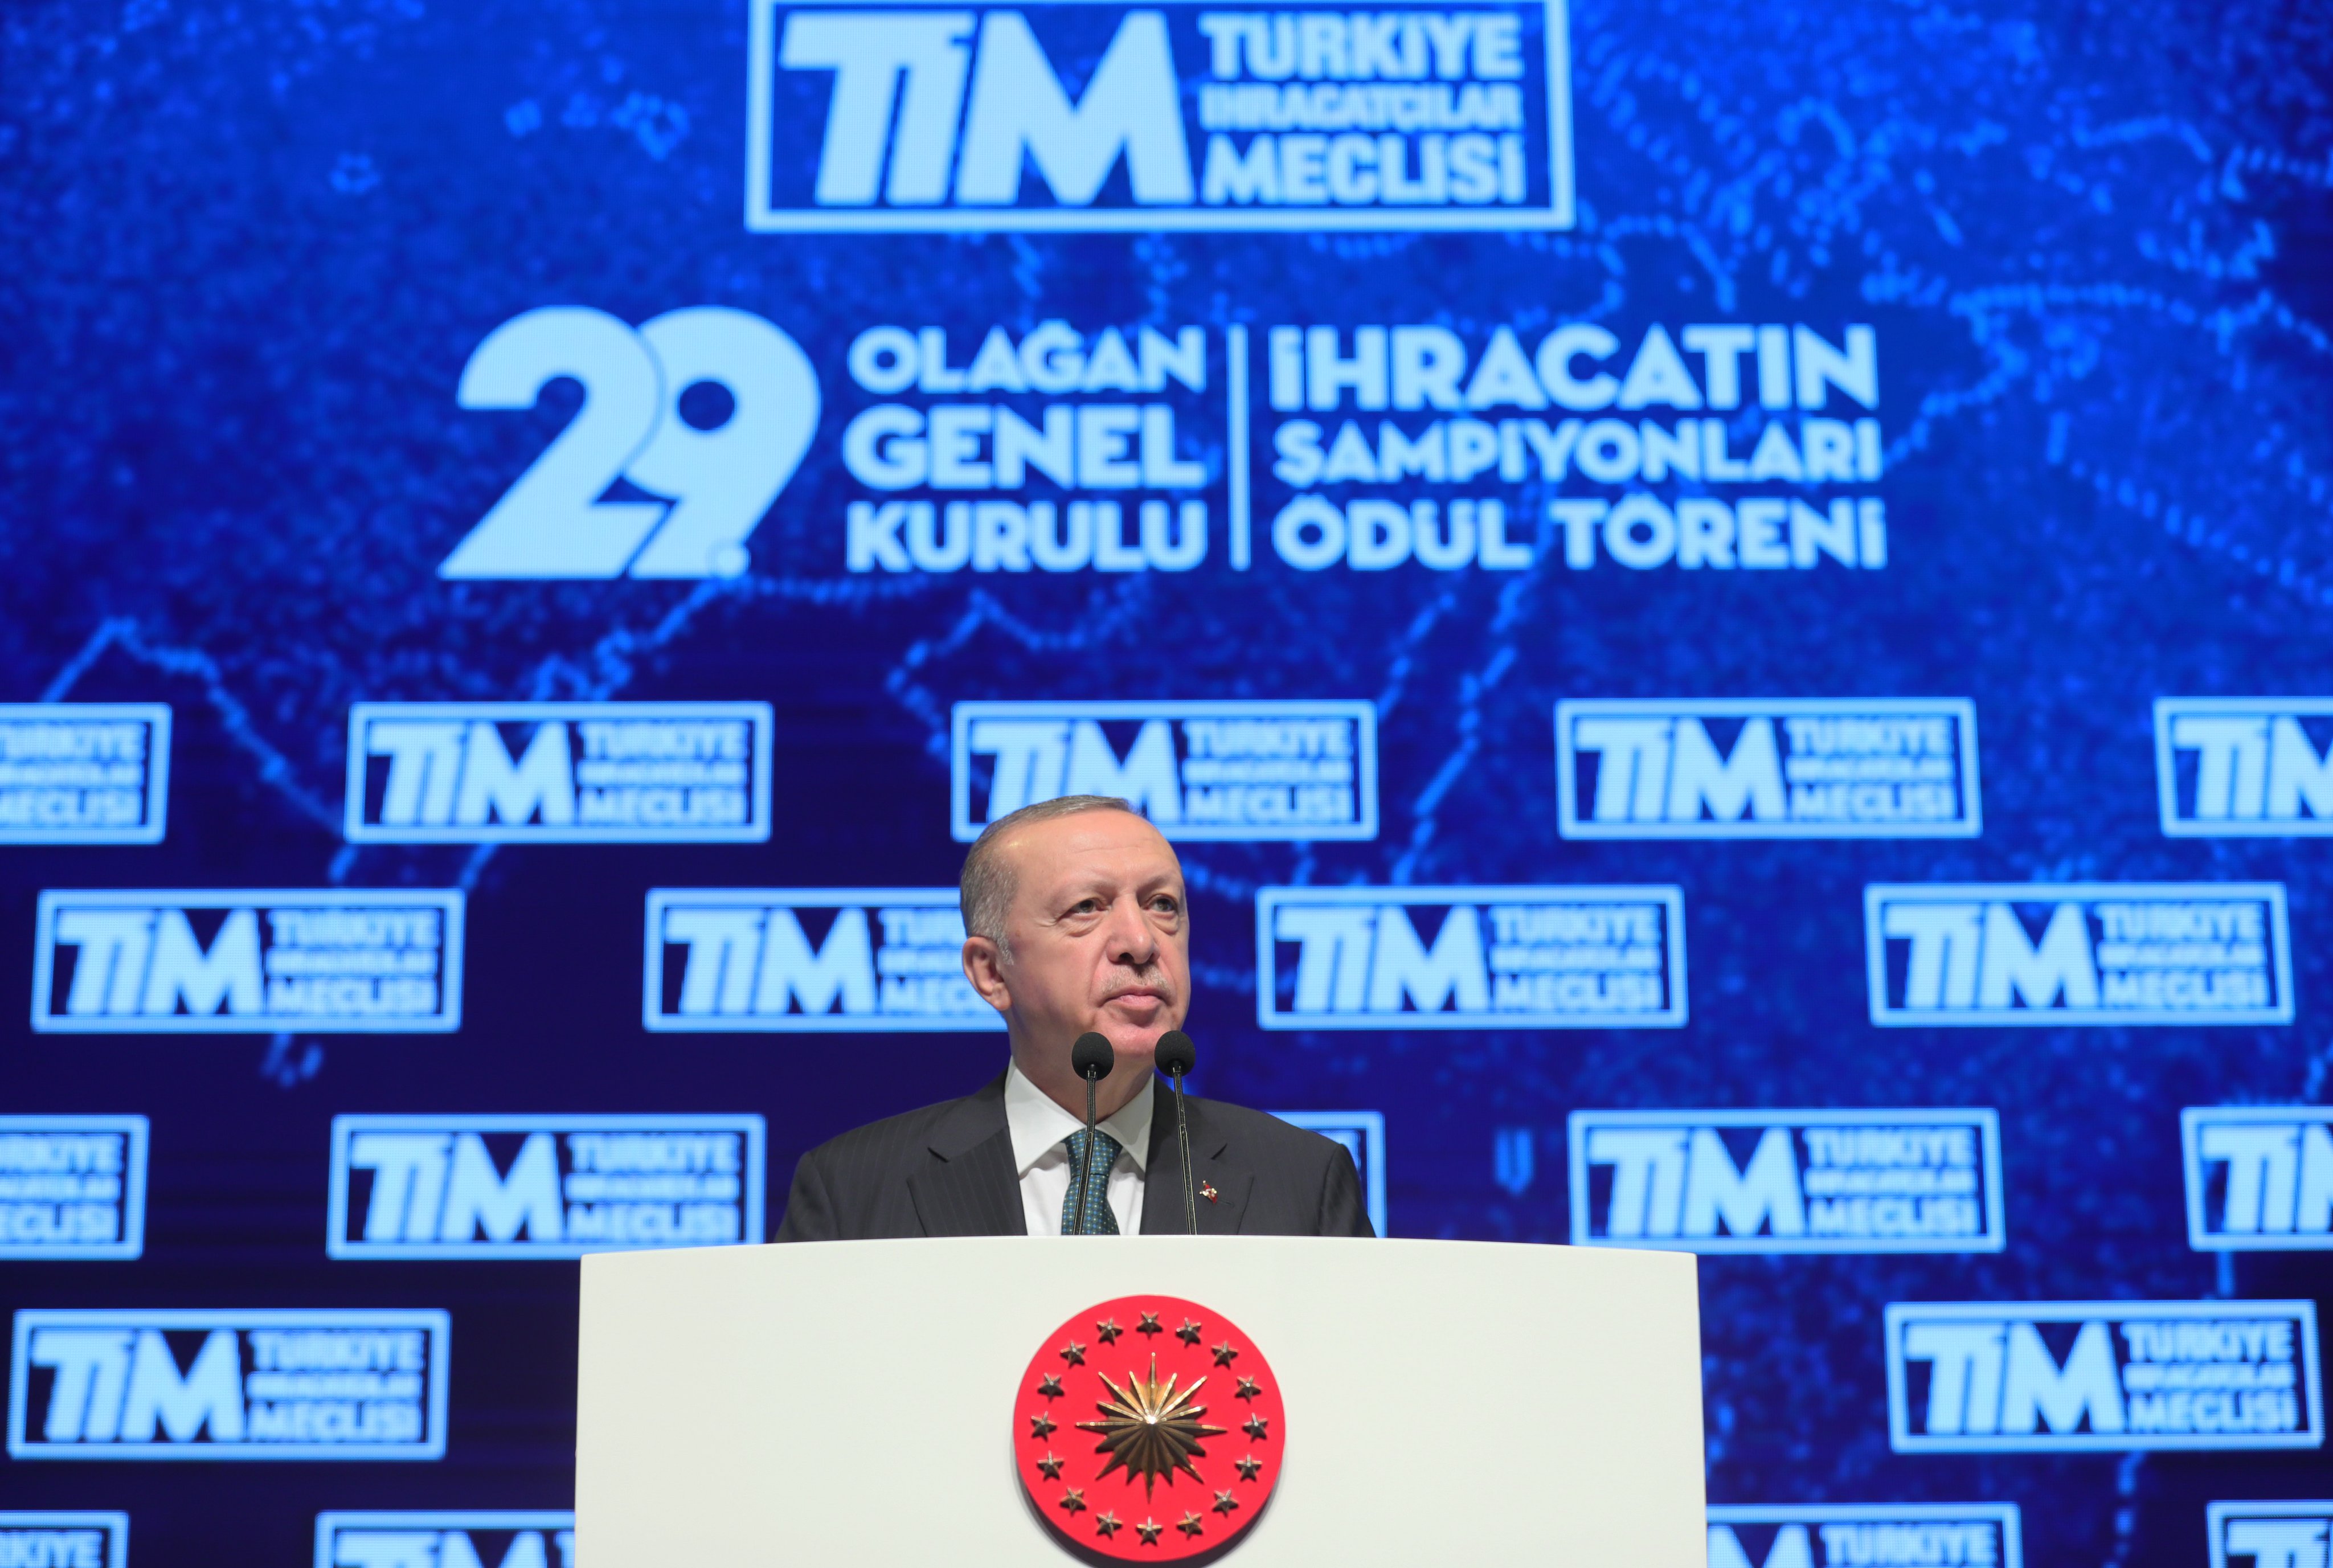 Cumhurbaşkanı Erdoğan İhracatın Şampiyonları Ödül Töreni'nde konuştu! Polisimize saldırı kalleşlik, kanı bozukluktur, bu alçaklığın bedelini yargı önünde ödeteceğiz